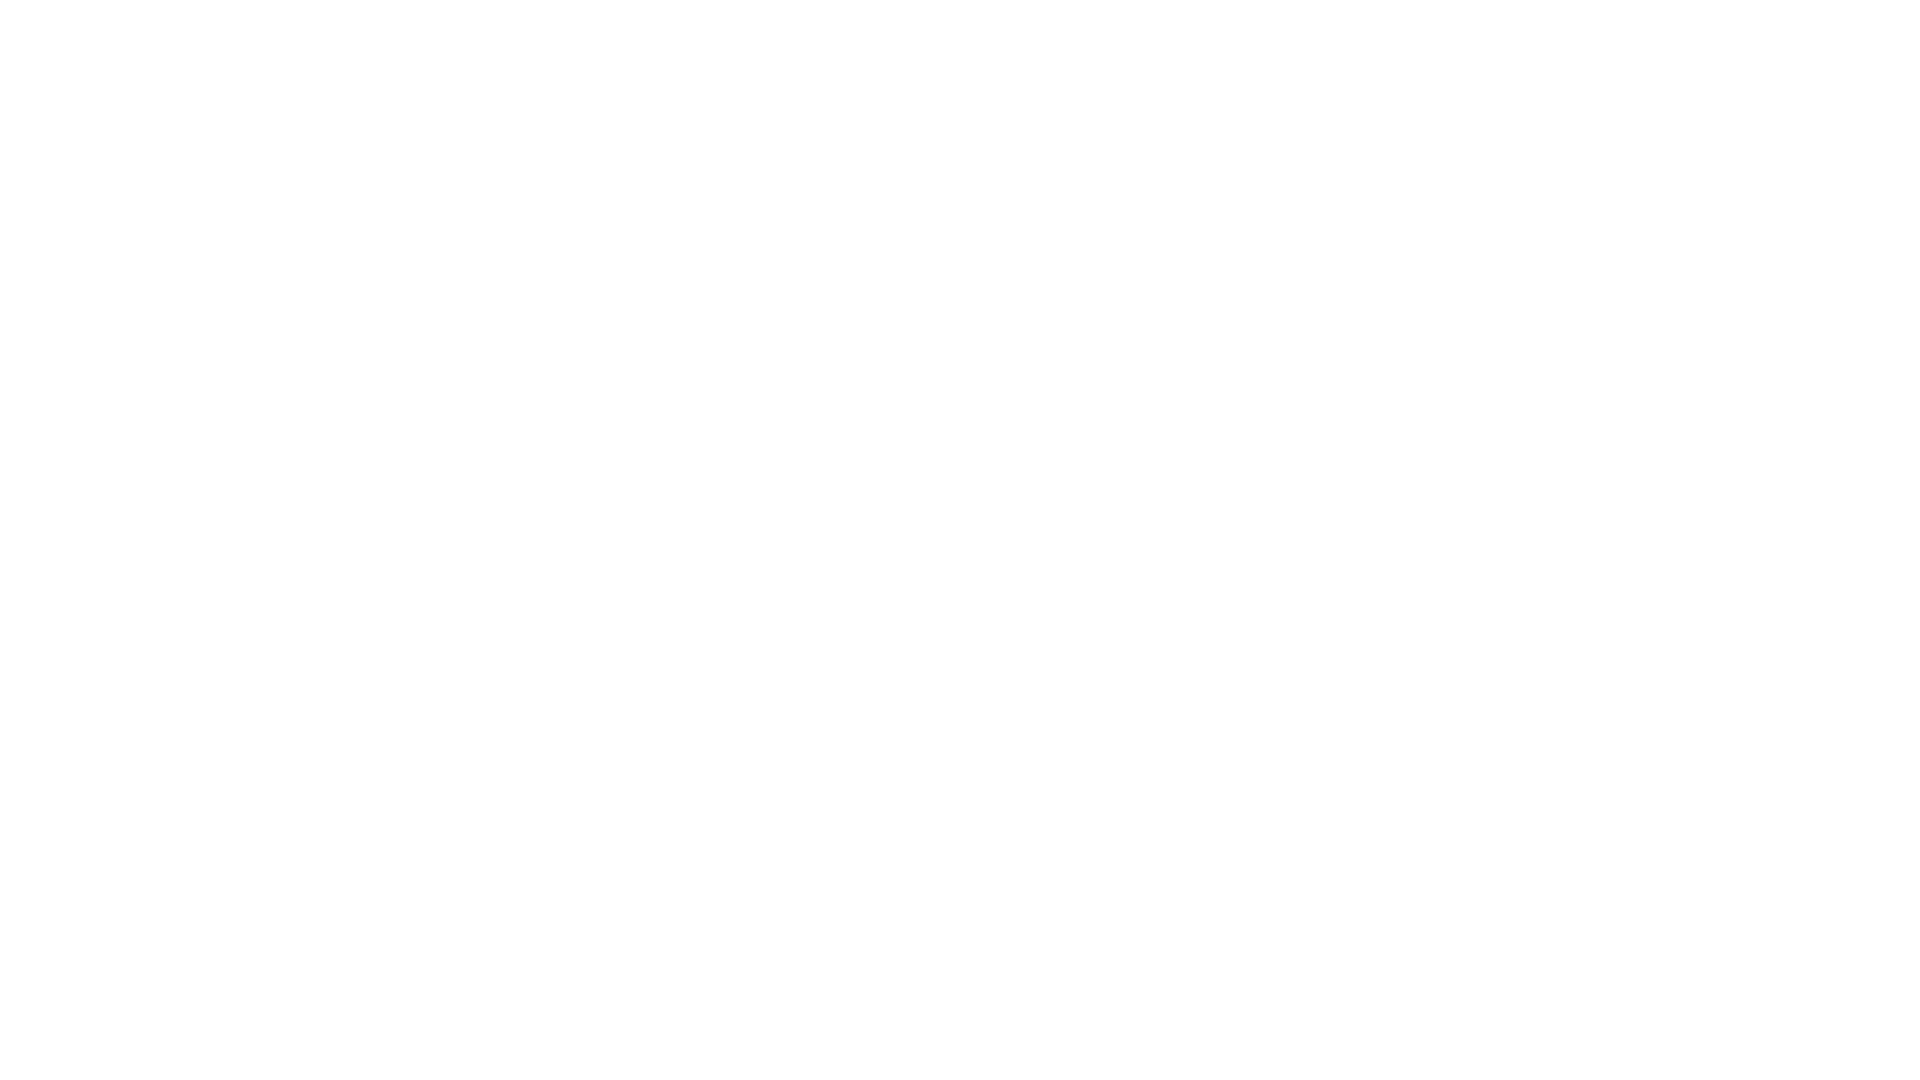 Plan de recuperación, tranformación y resiliencia